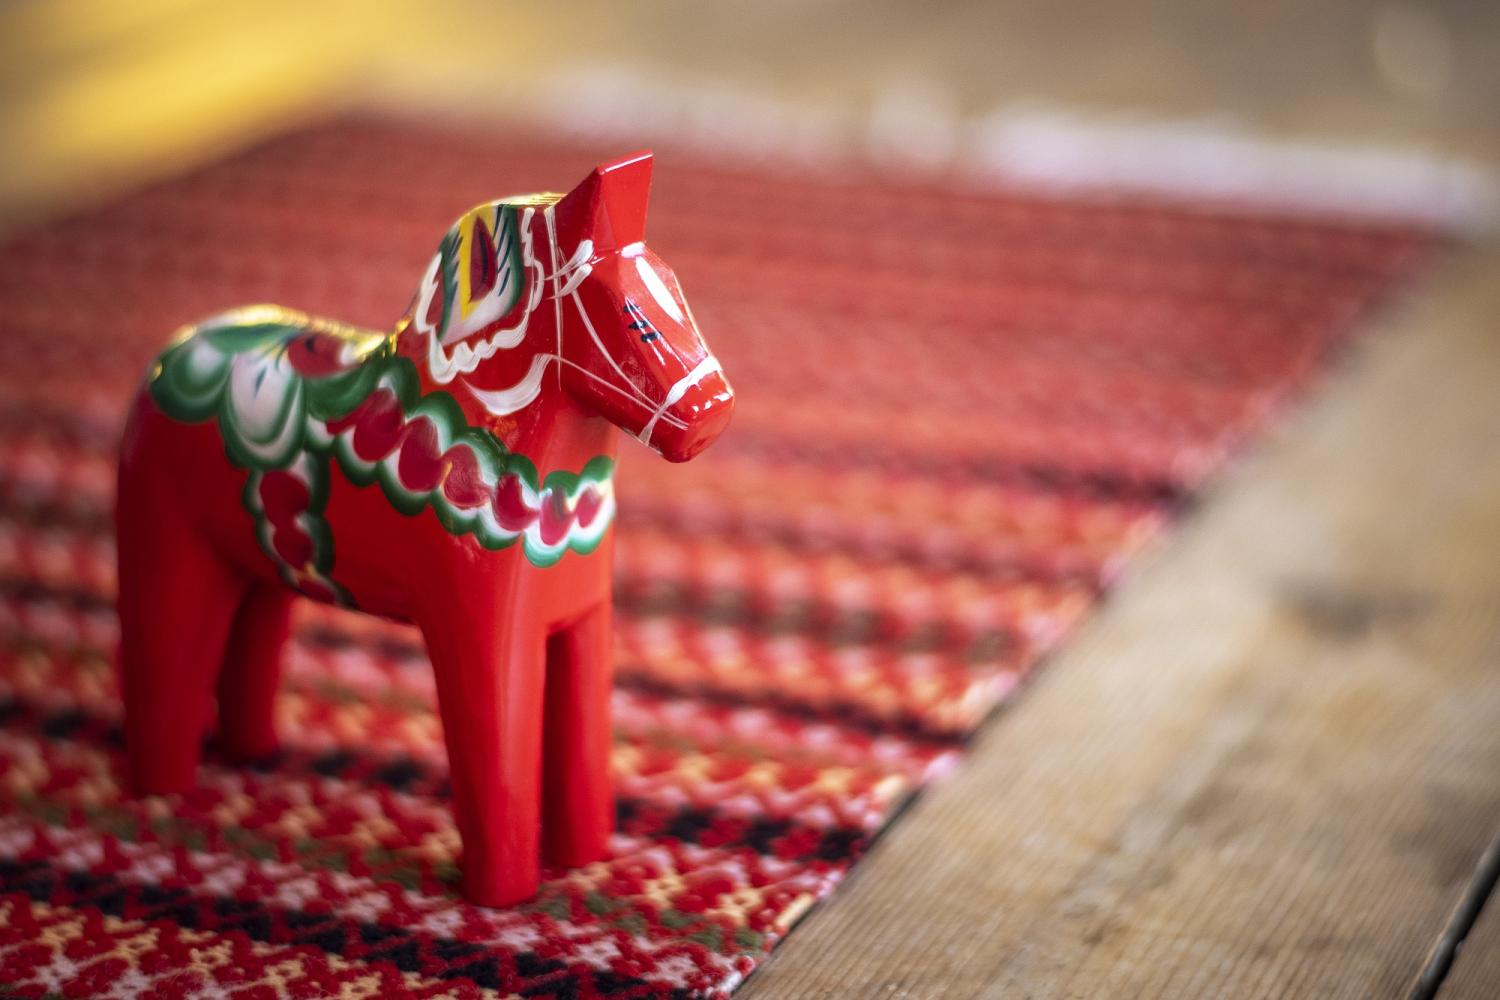 Ein rotes Dala-Pferd auf einem farbigen Tischläufer.